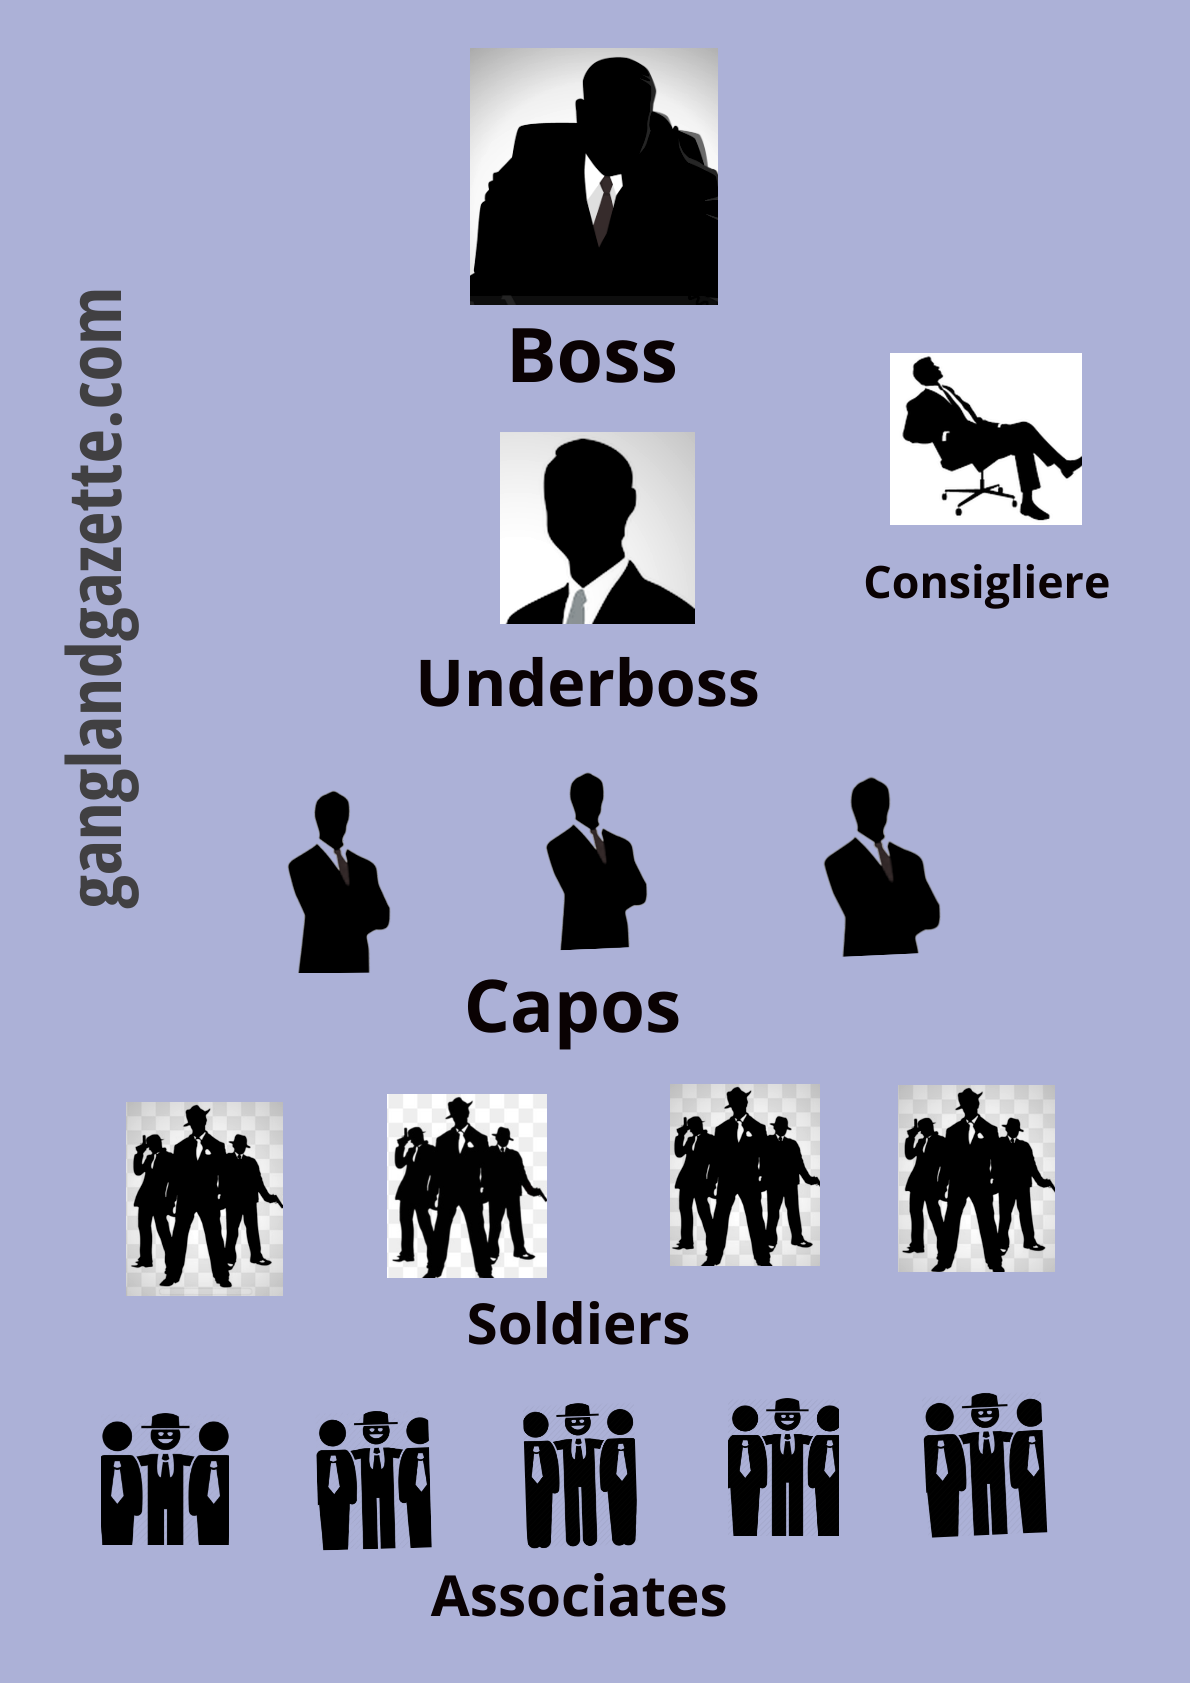 Mafia Organization Chart